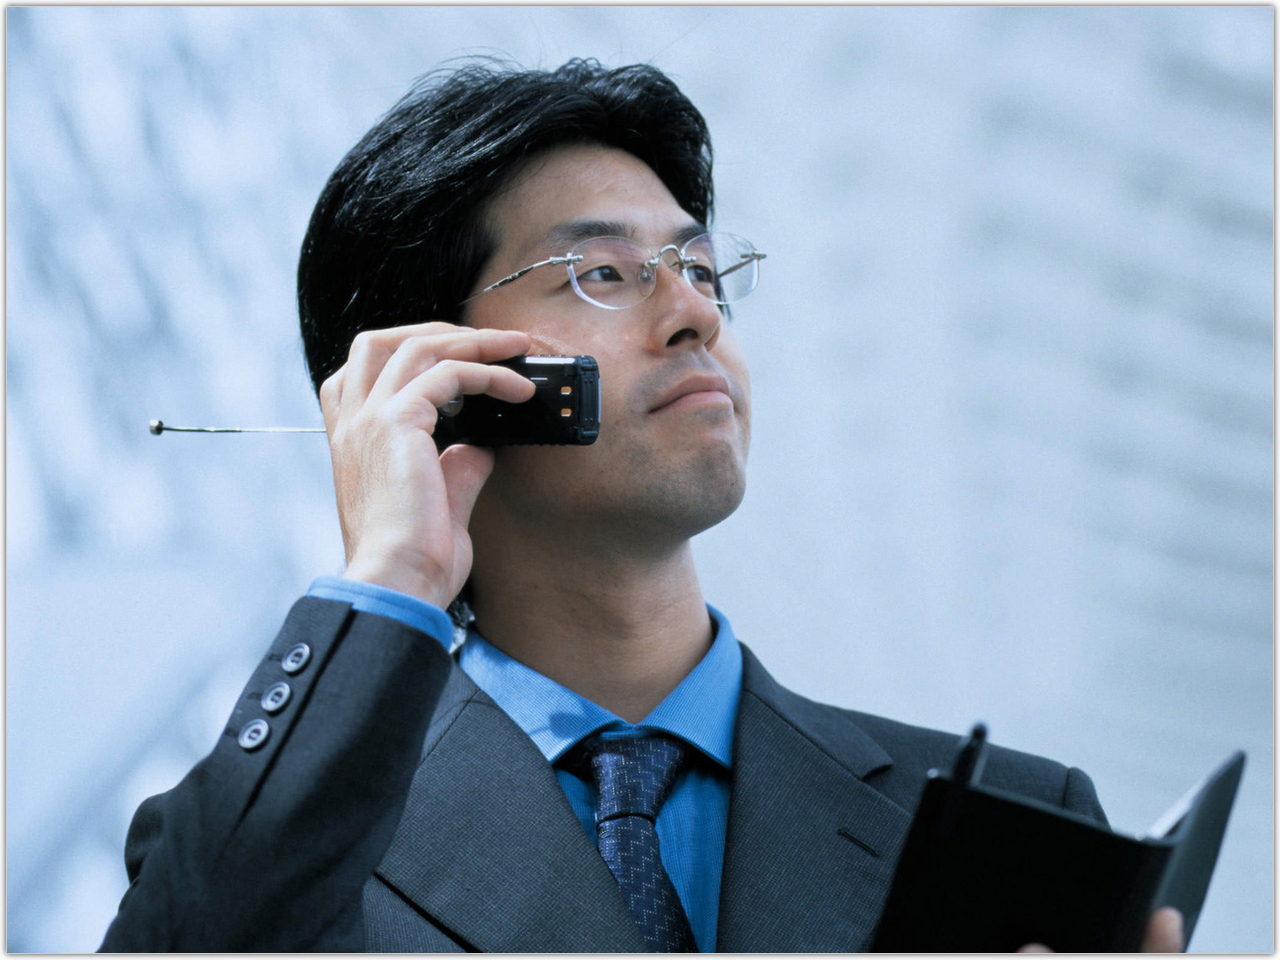 男性が東京は渋谷区の税理士事務所の採用情報を問い合わせているイメージ。